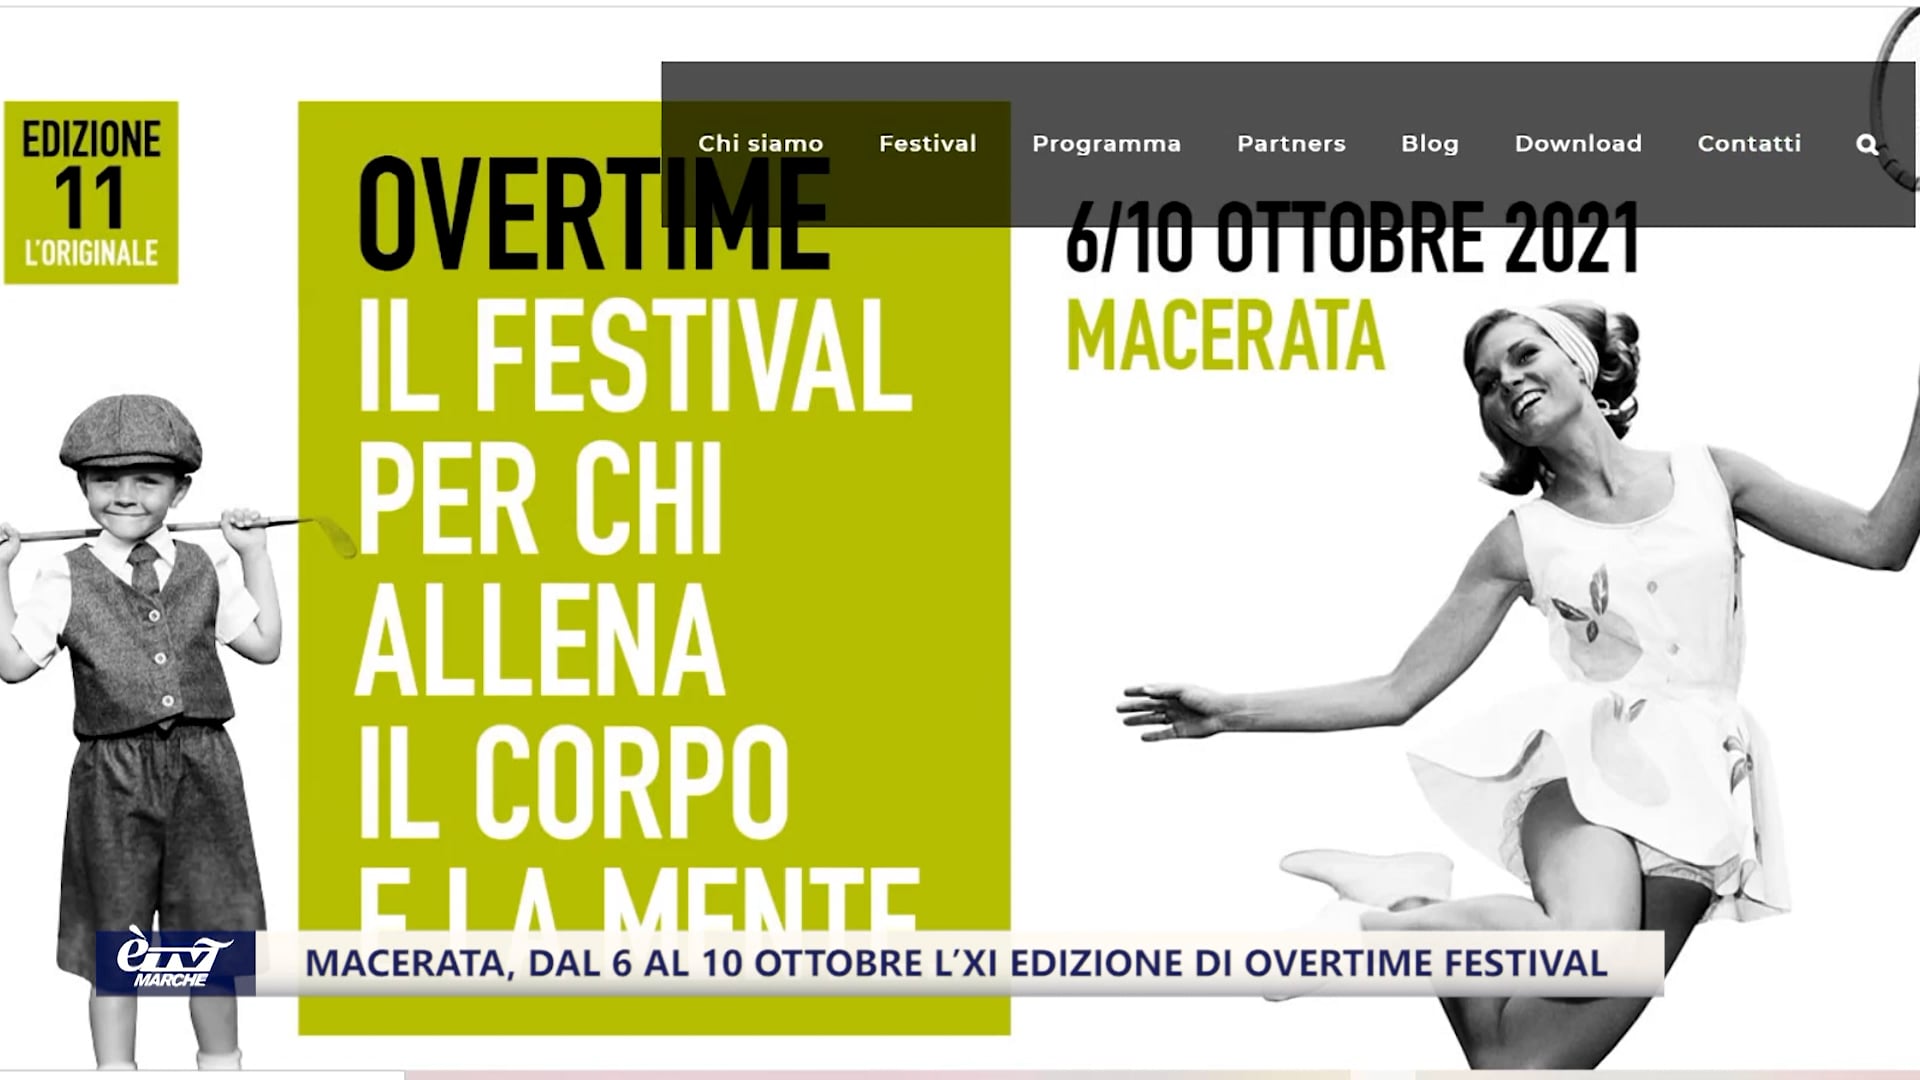 Macerata, dal 6 al 10 ottobre l’XI edizione di Overtime Festival